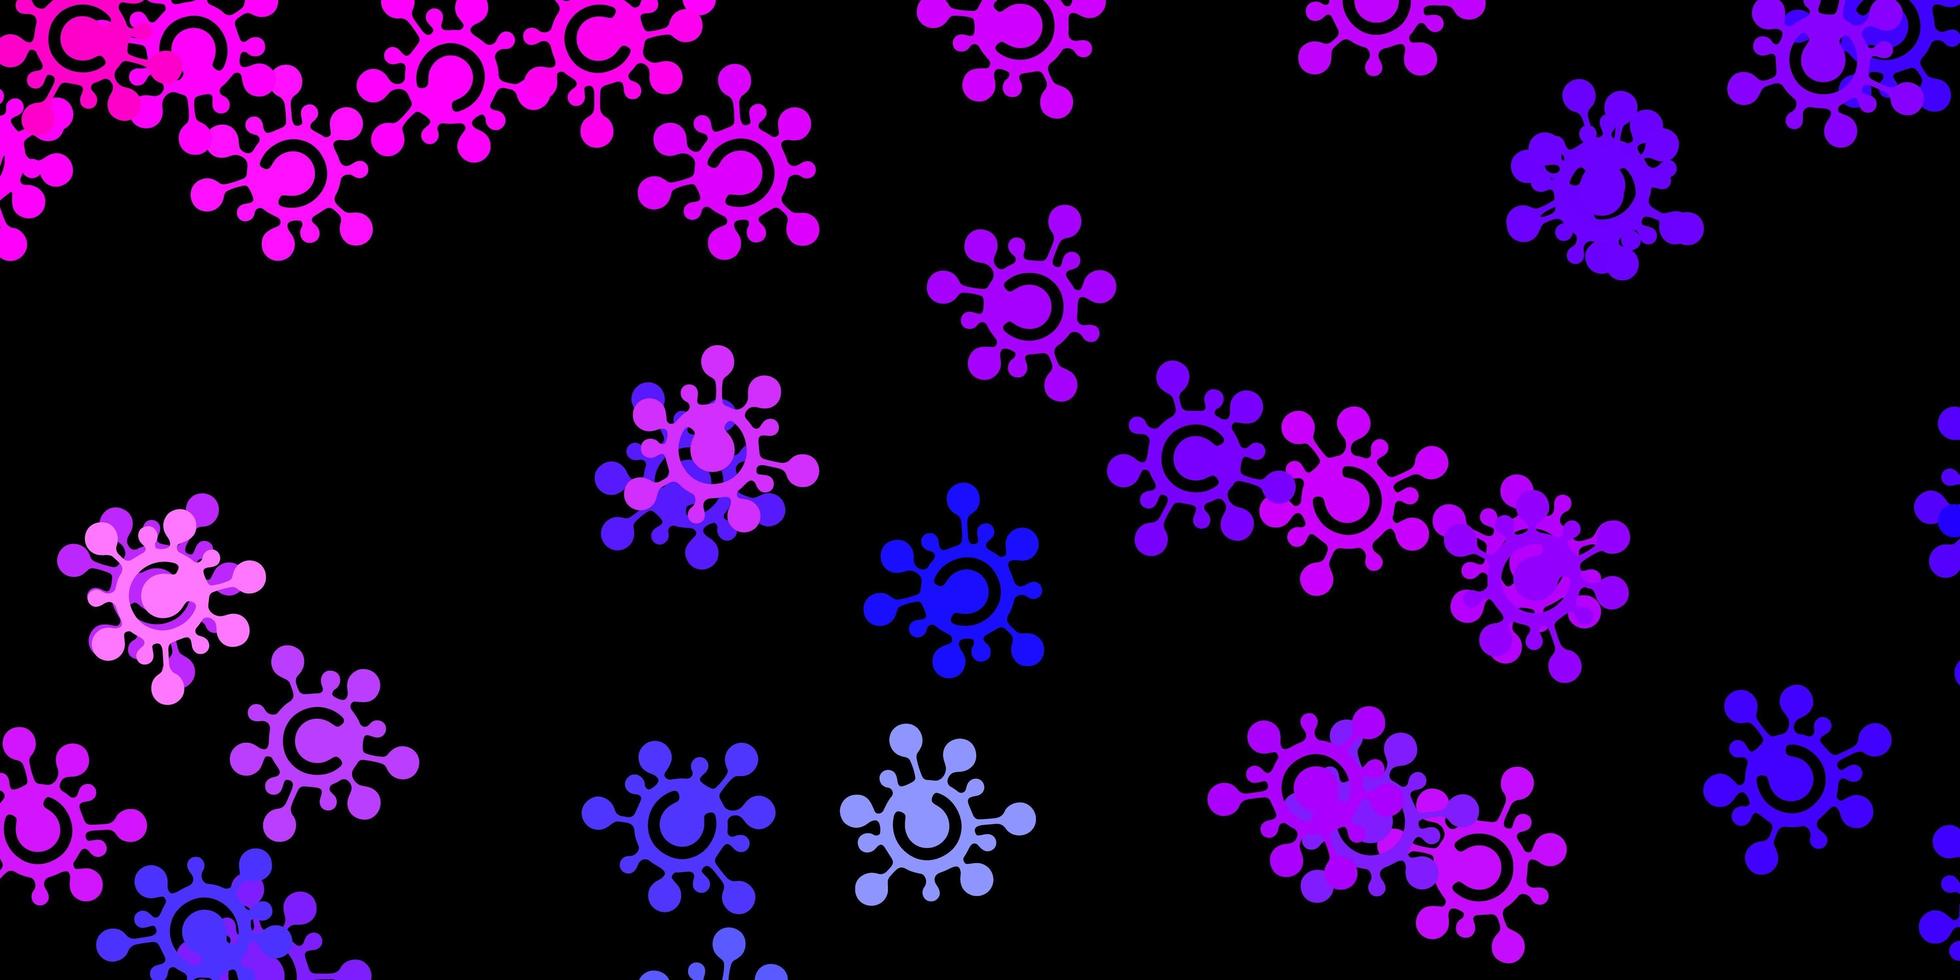 mörkrosa, blå vektormönster med coronaviruselement. vektor